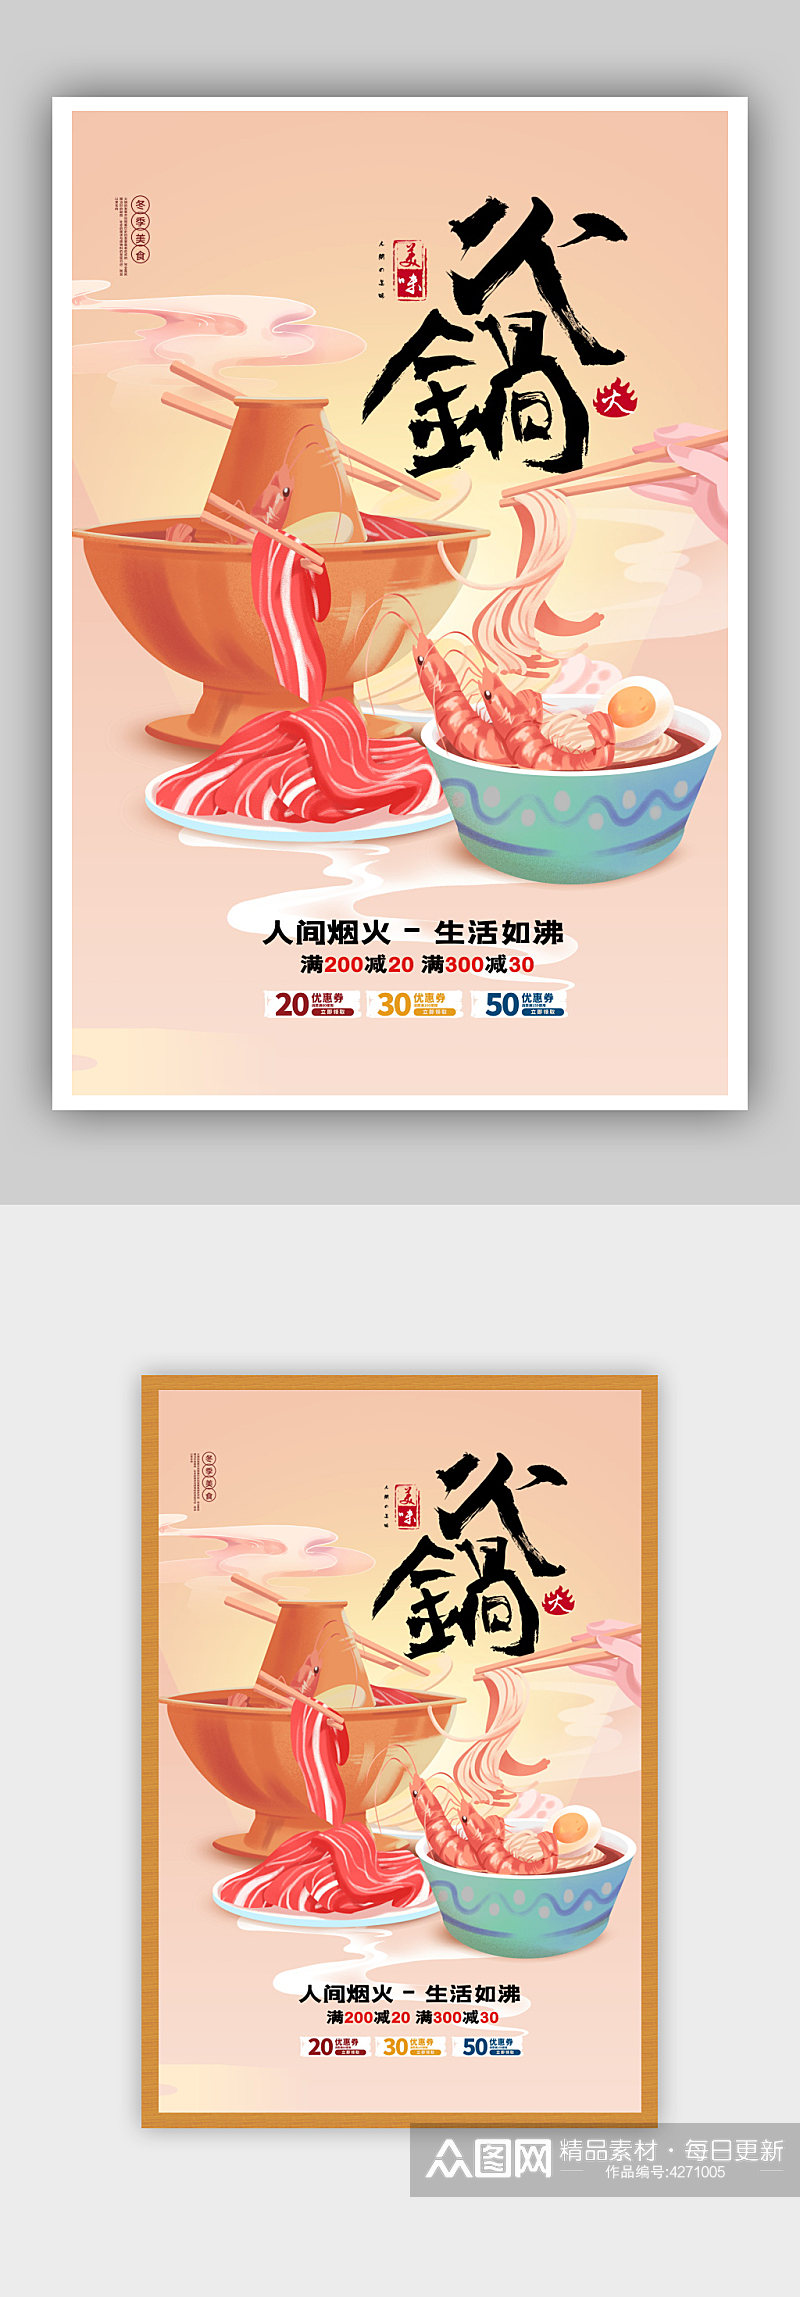 简约冬季美食火锅促销活动海报素材